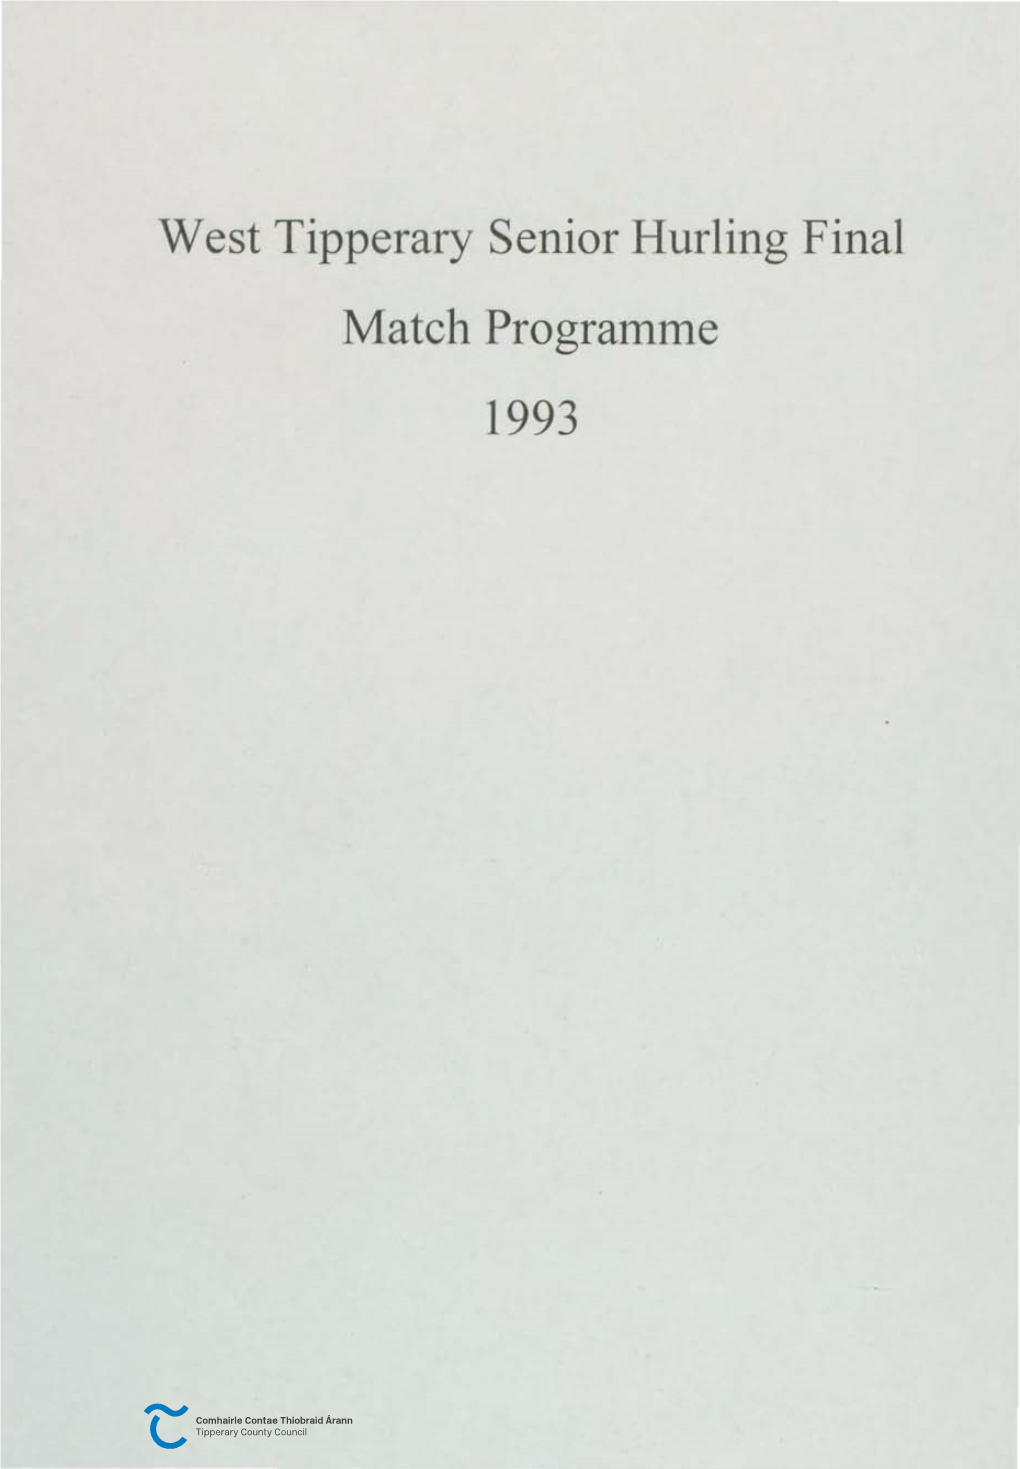 West Tipperary Senior Hurling Final Match Programme 1993